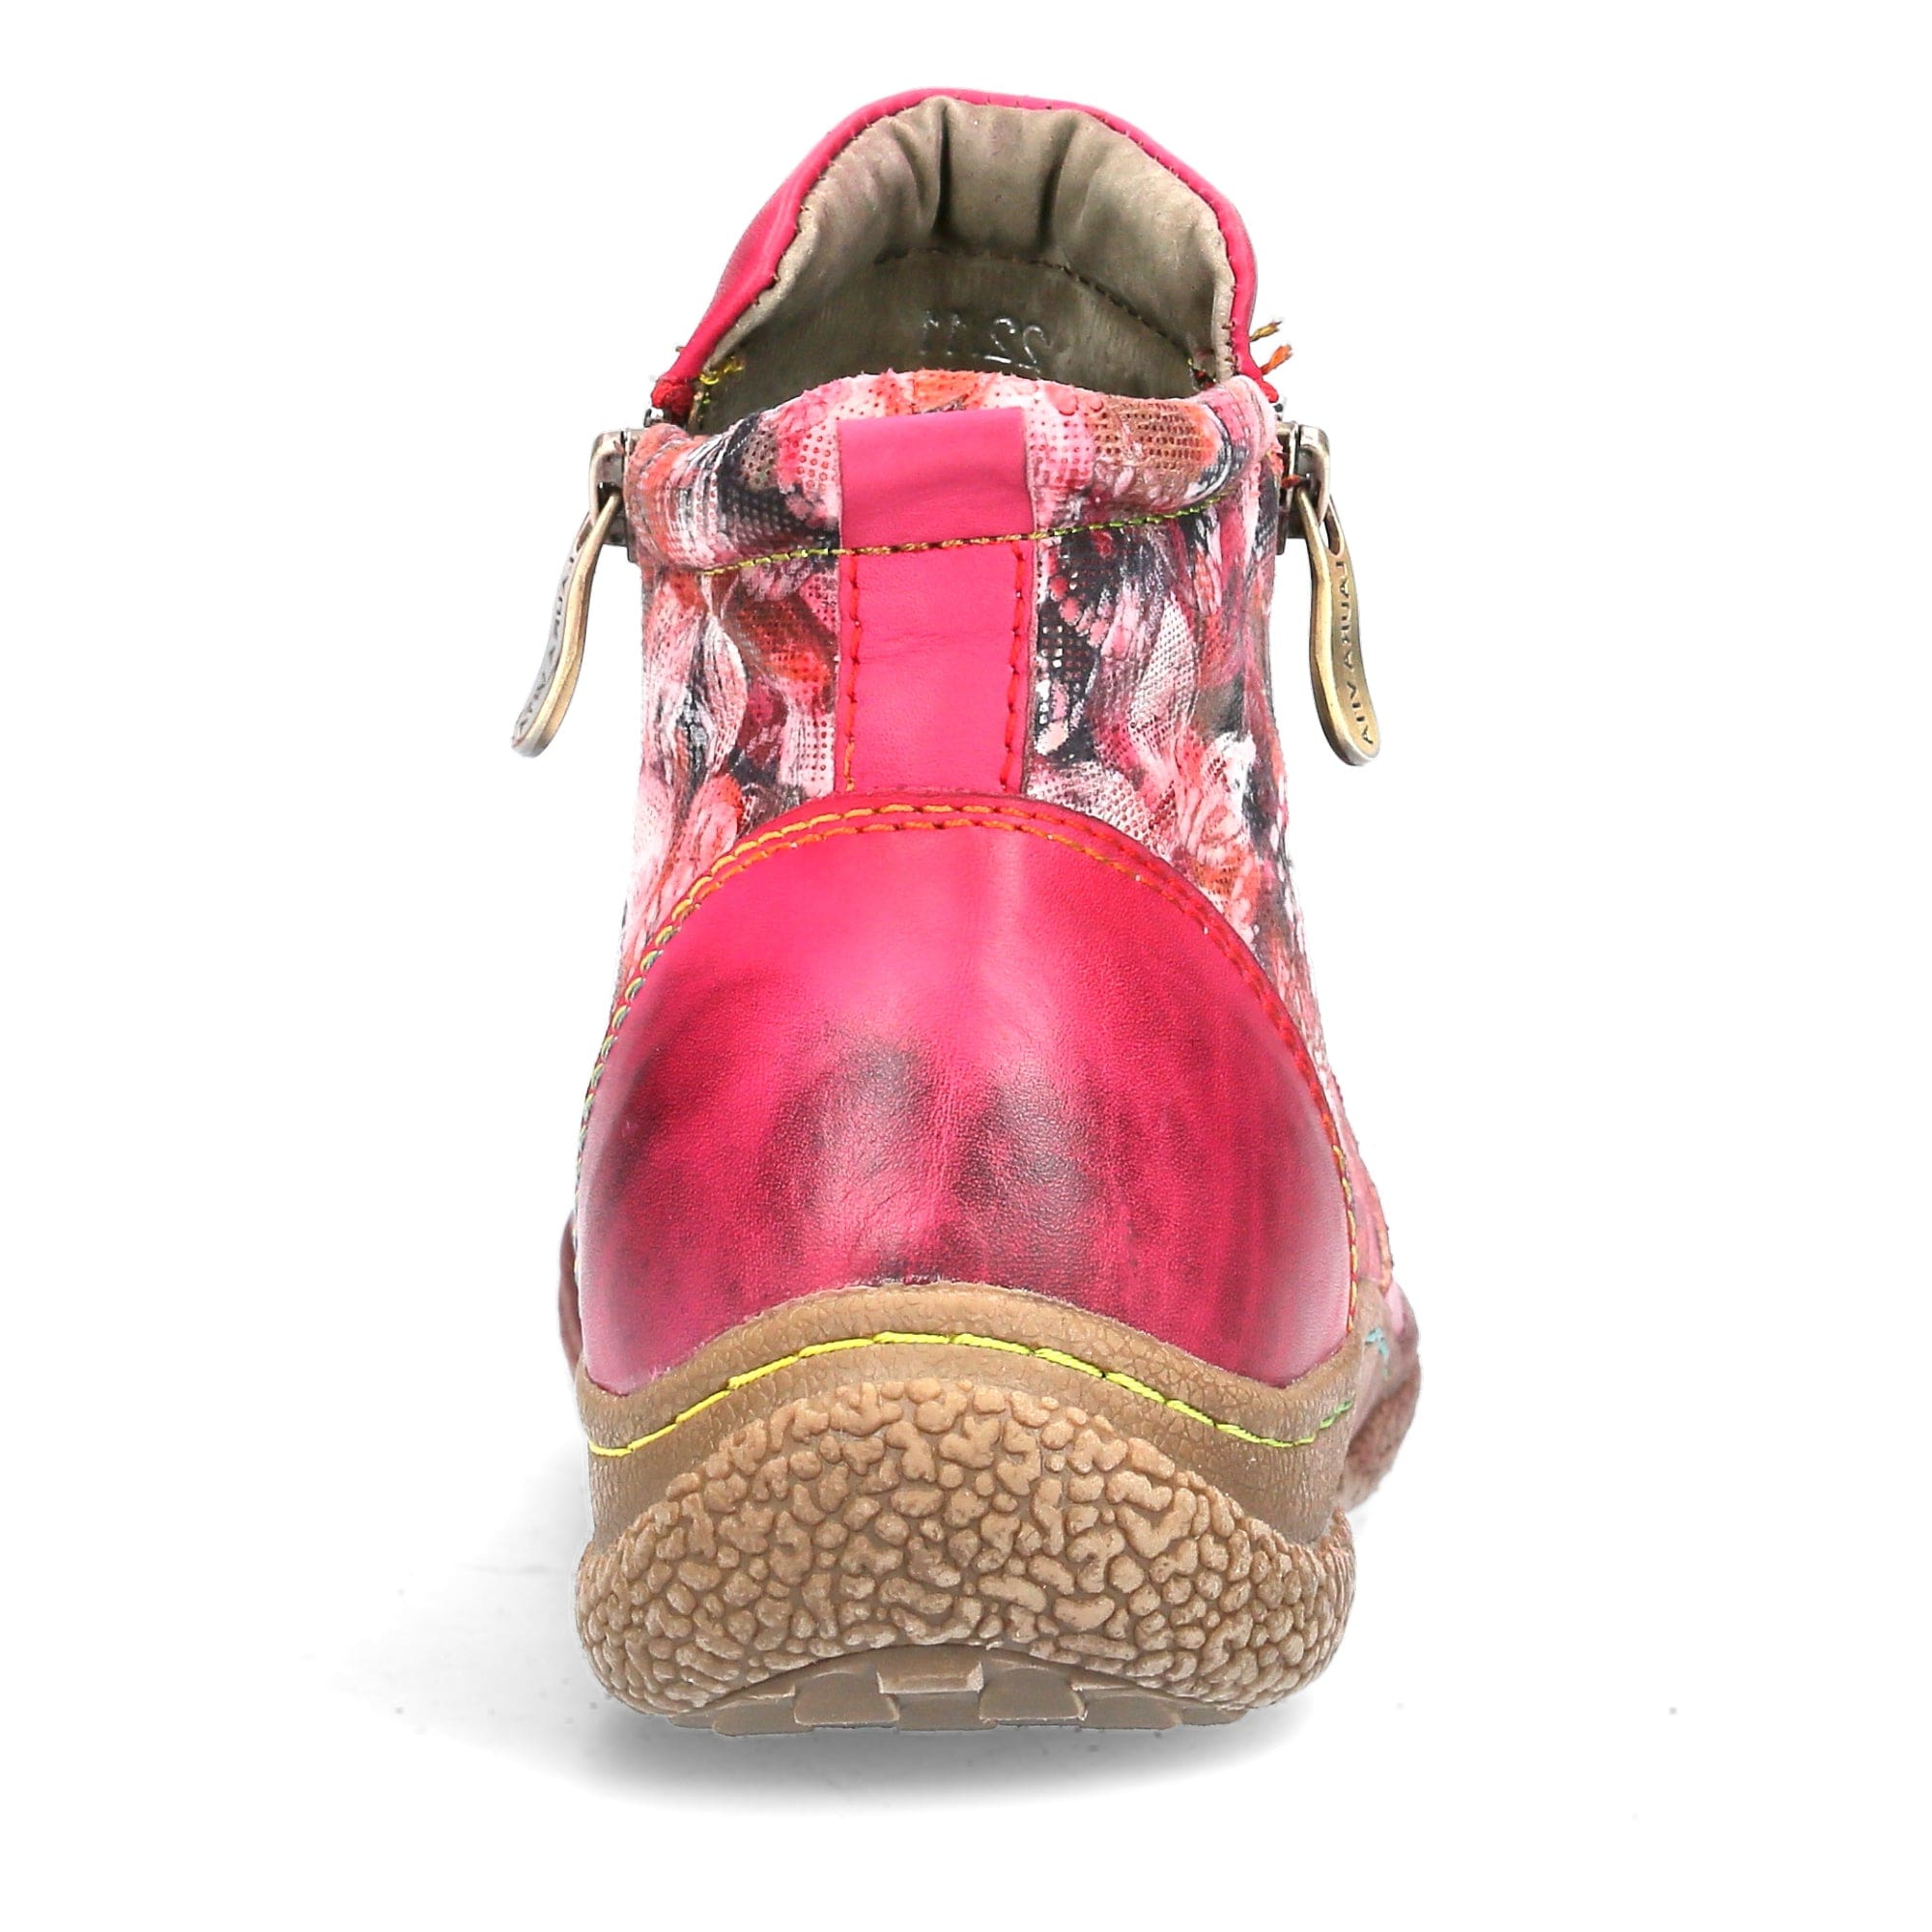 Schuh GOCTHO 1123 - Boots